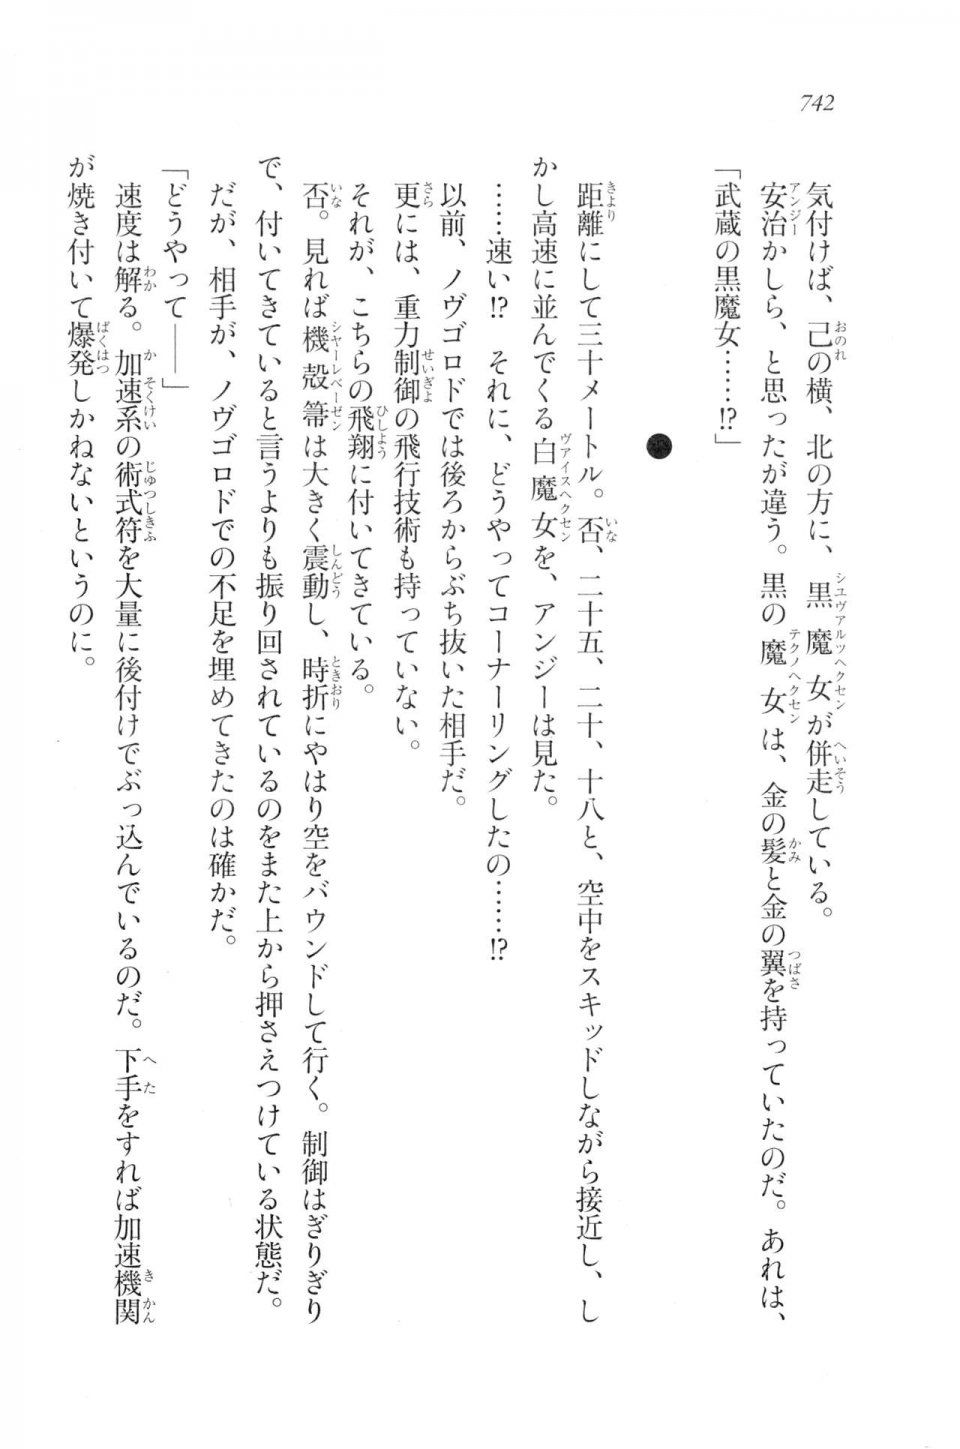 Kyoukai Senjou no Horizon LN Vol 20(8B) - Photo #742